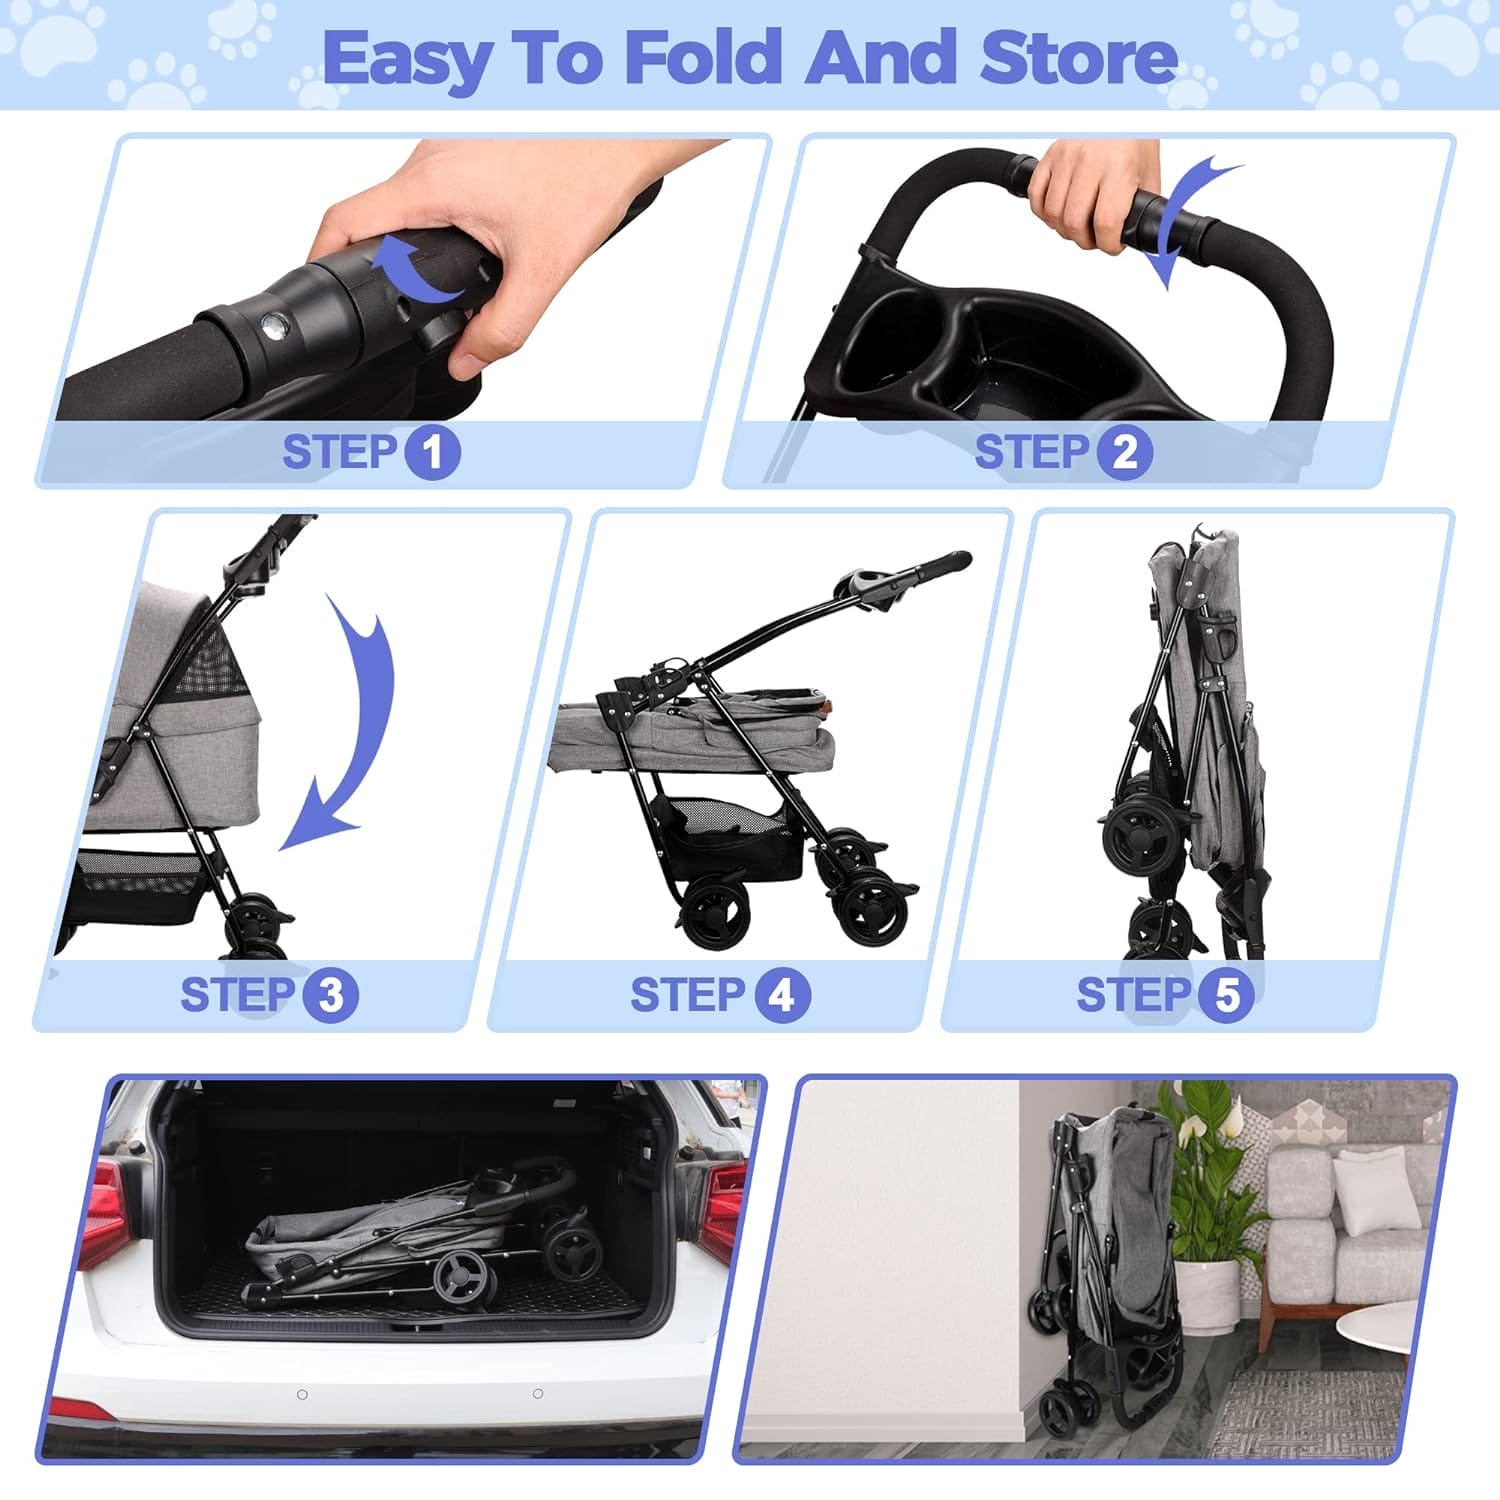 Liaakrr Foldable Detachable Pet Stroller Review